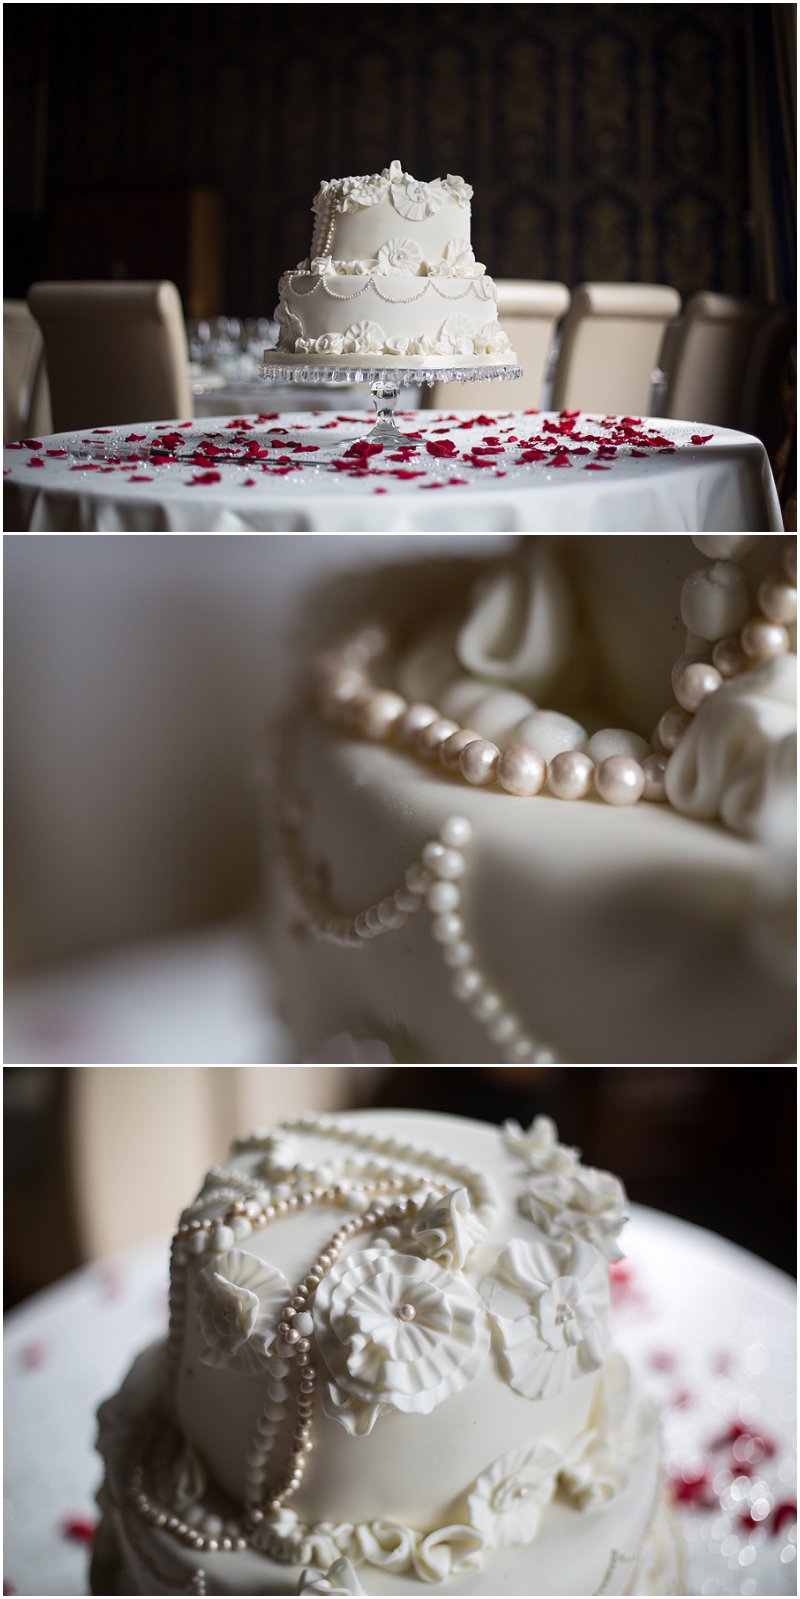 Stunning vintage wedding cake at Soughton Hall